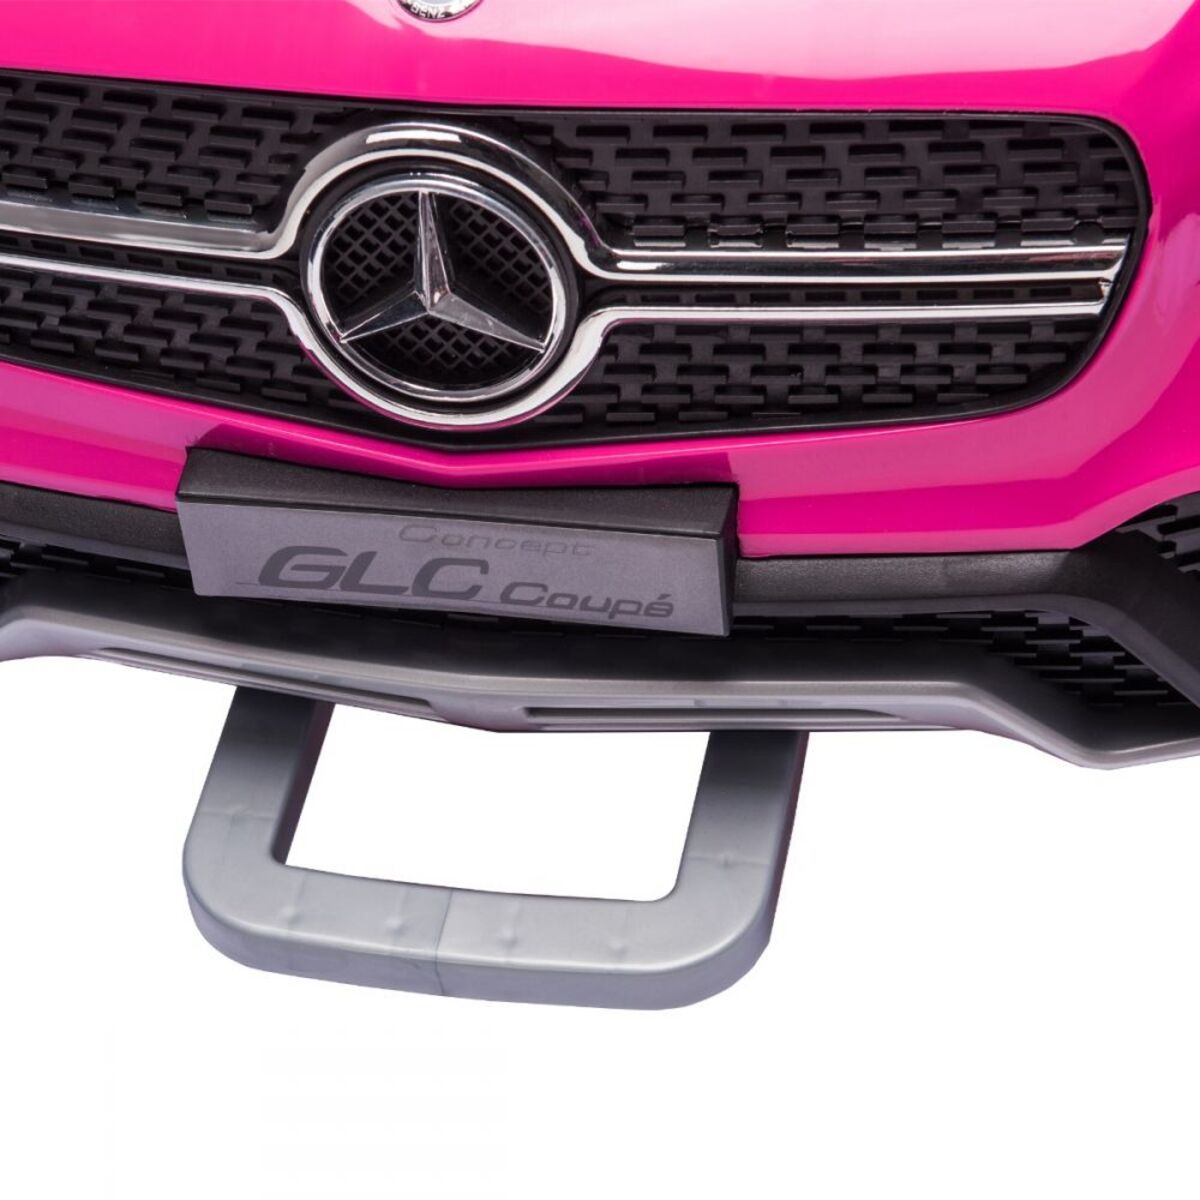 Coche eléctrico infantil Mercedes GLC Coupé